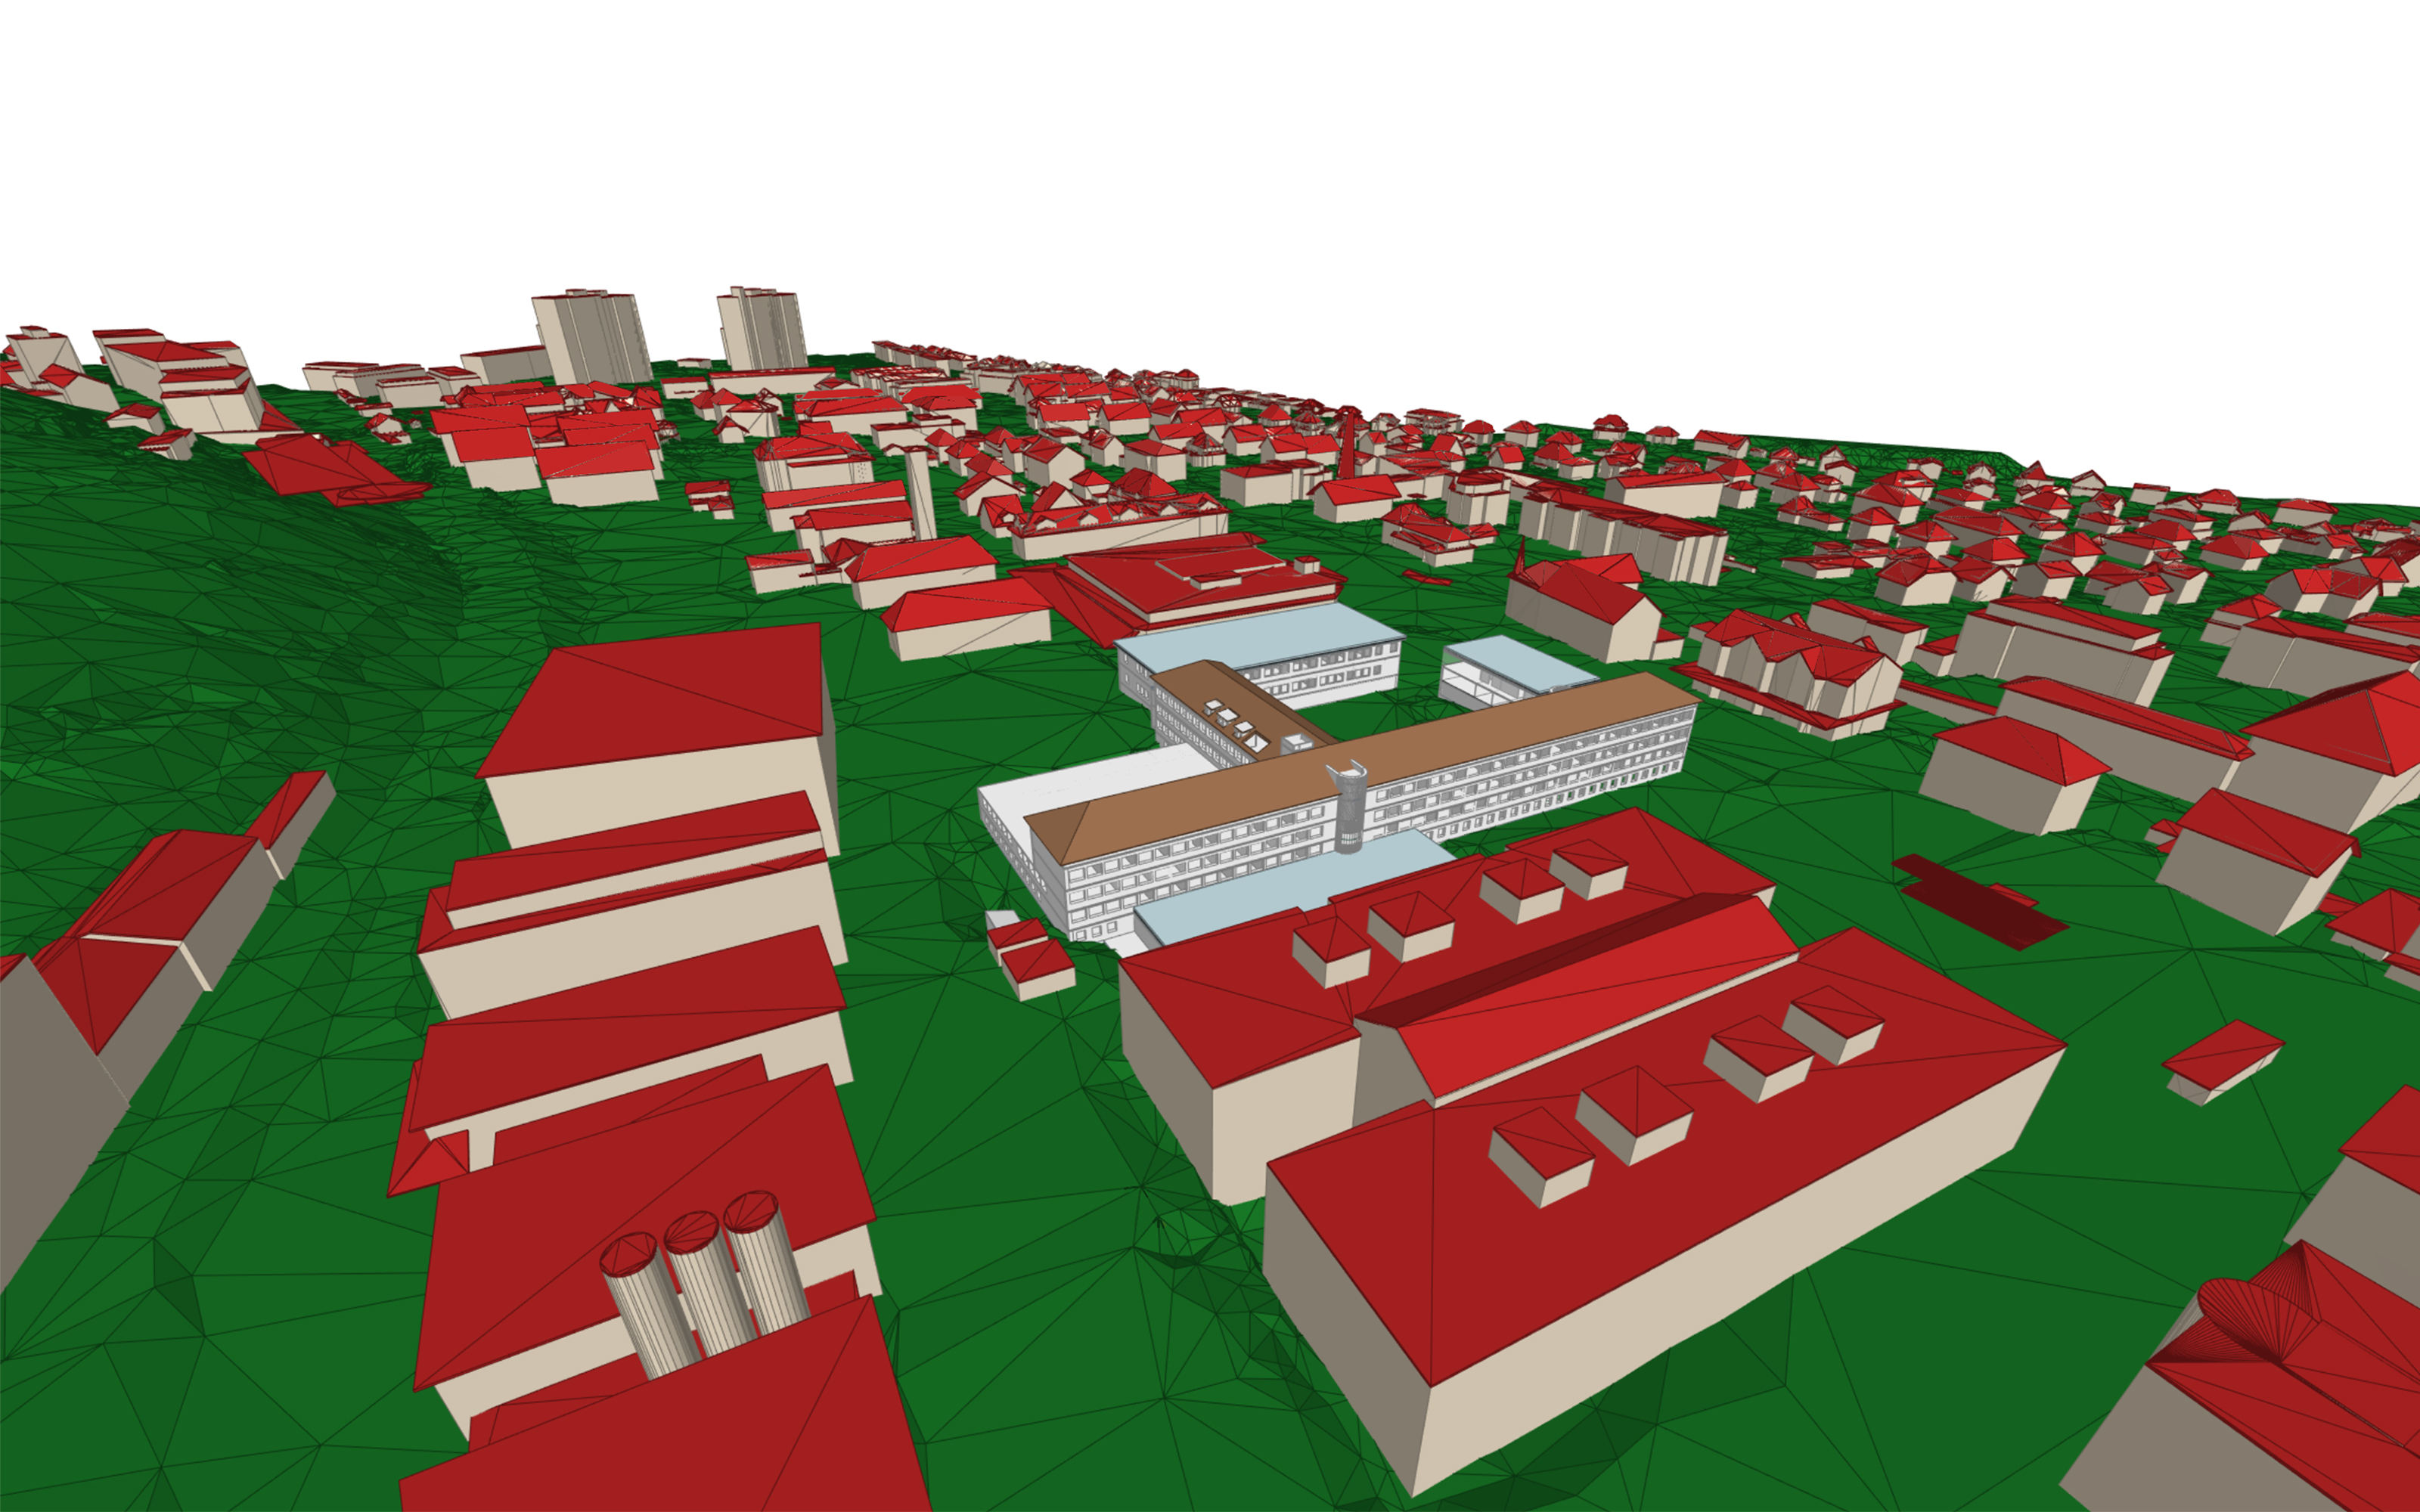  Représentation 3D d'une zone urbaine vue du ciel